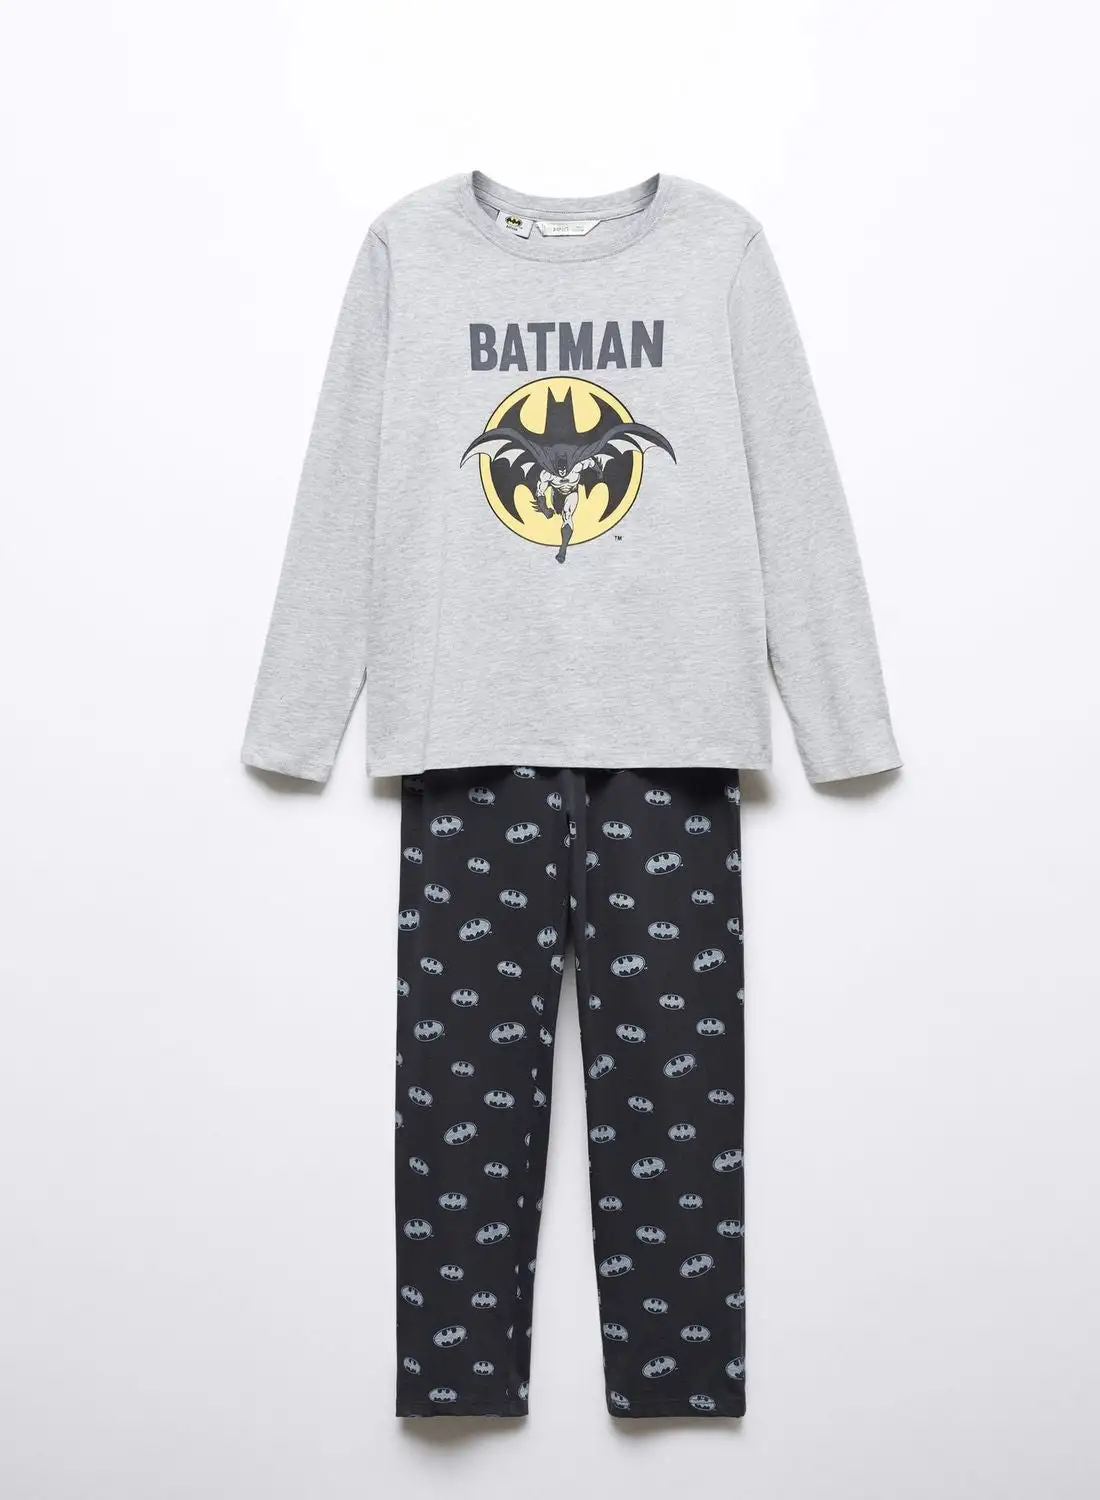 MANGO Kids Batman Crew Neck T-Shirt And Pyjamas Set